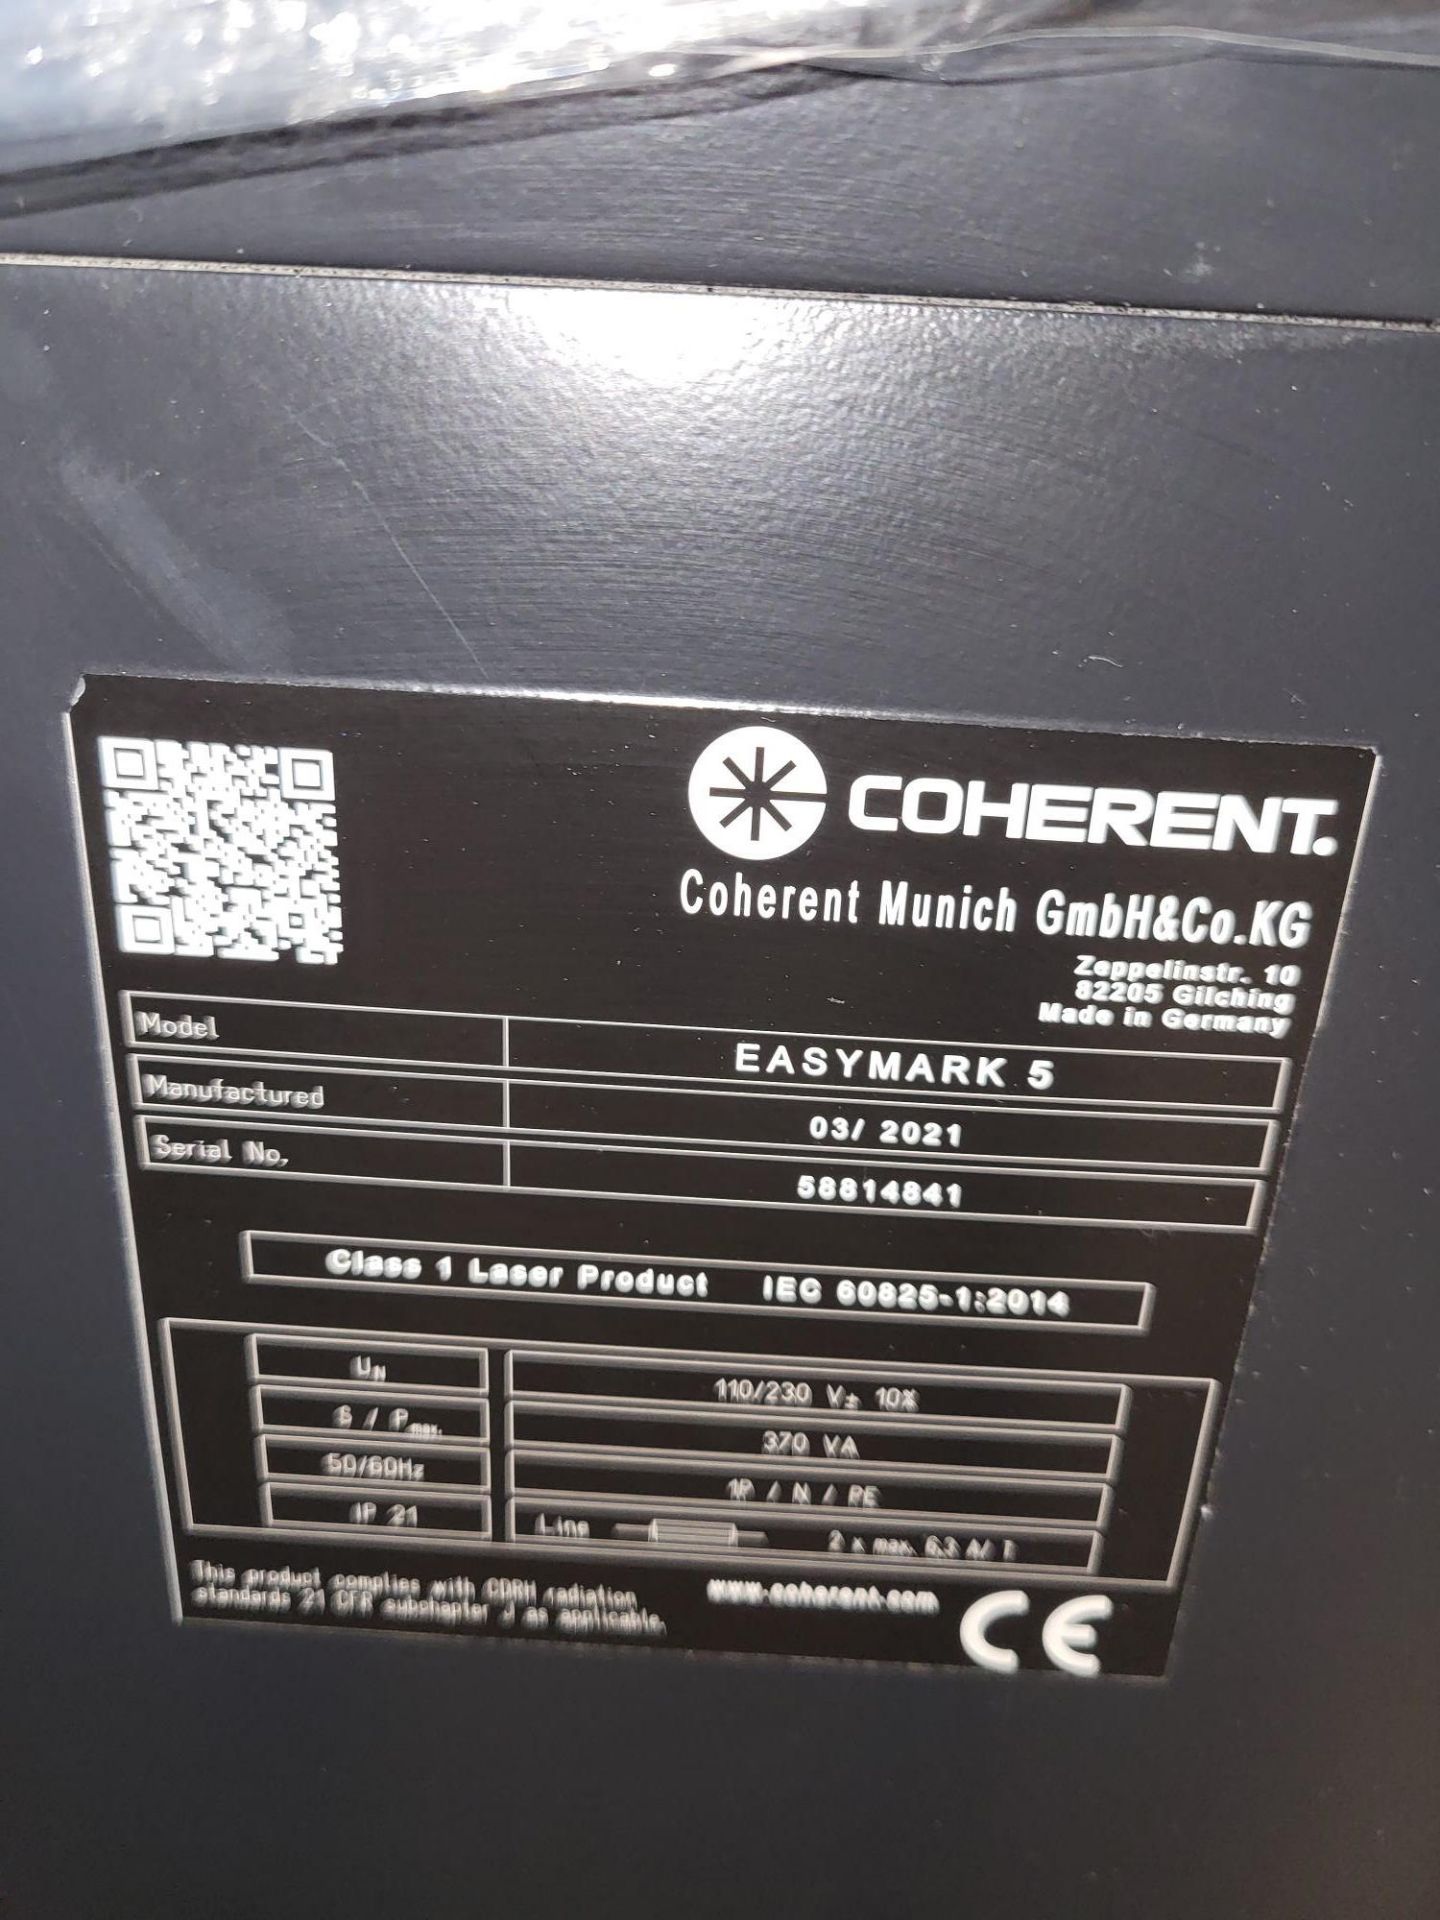 Coherent Easymark 5 Laser Marking System, Serial Number 58814841 (2021) - Image 2 of 2